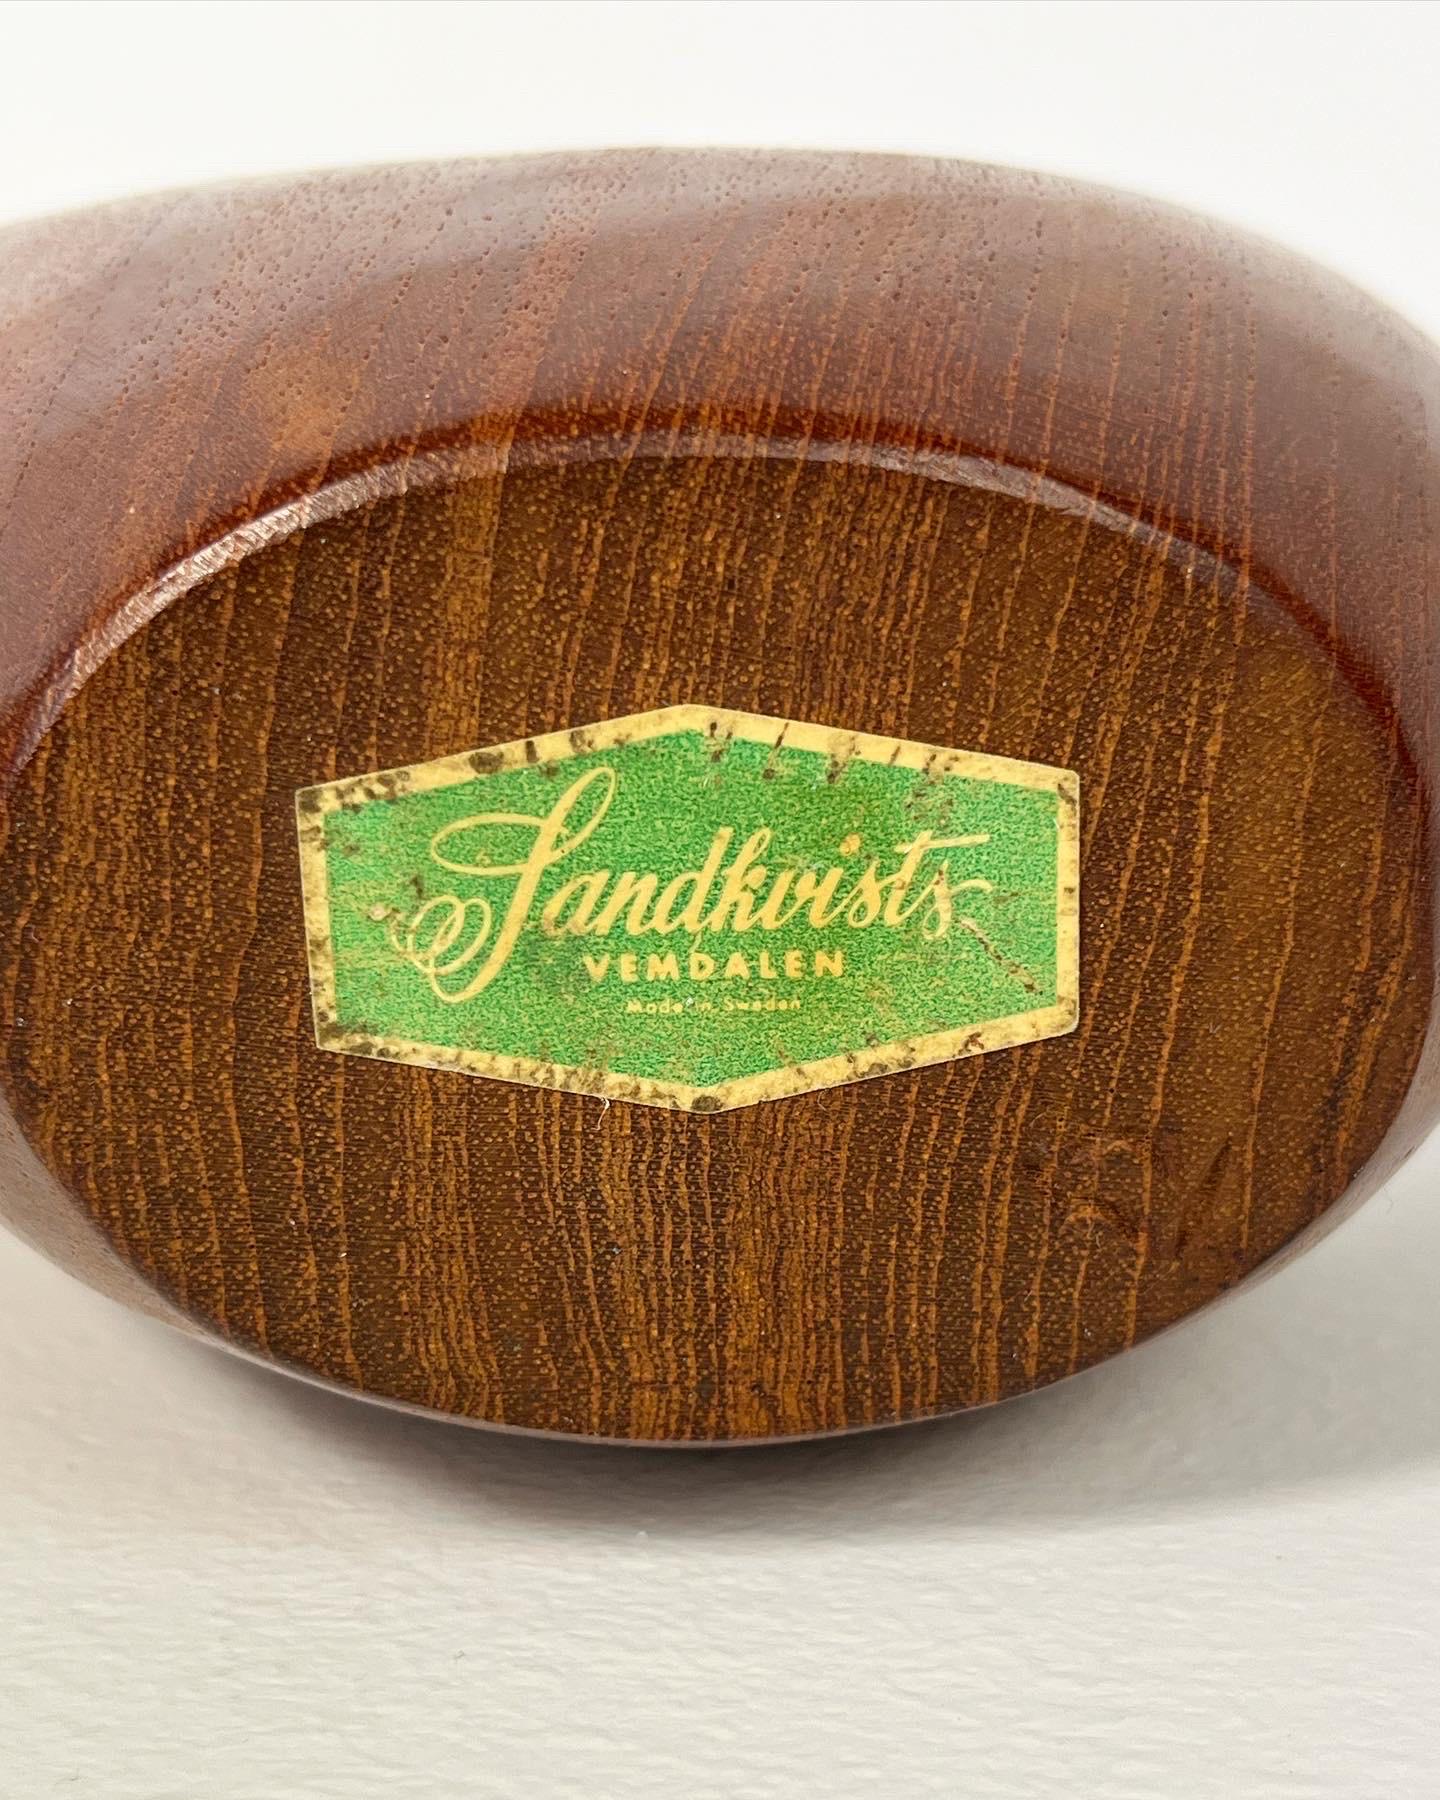 Stig Sandkvist Teak Bowl Hand Carved Sweden 1950s Midcentury Design 3